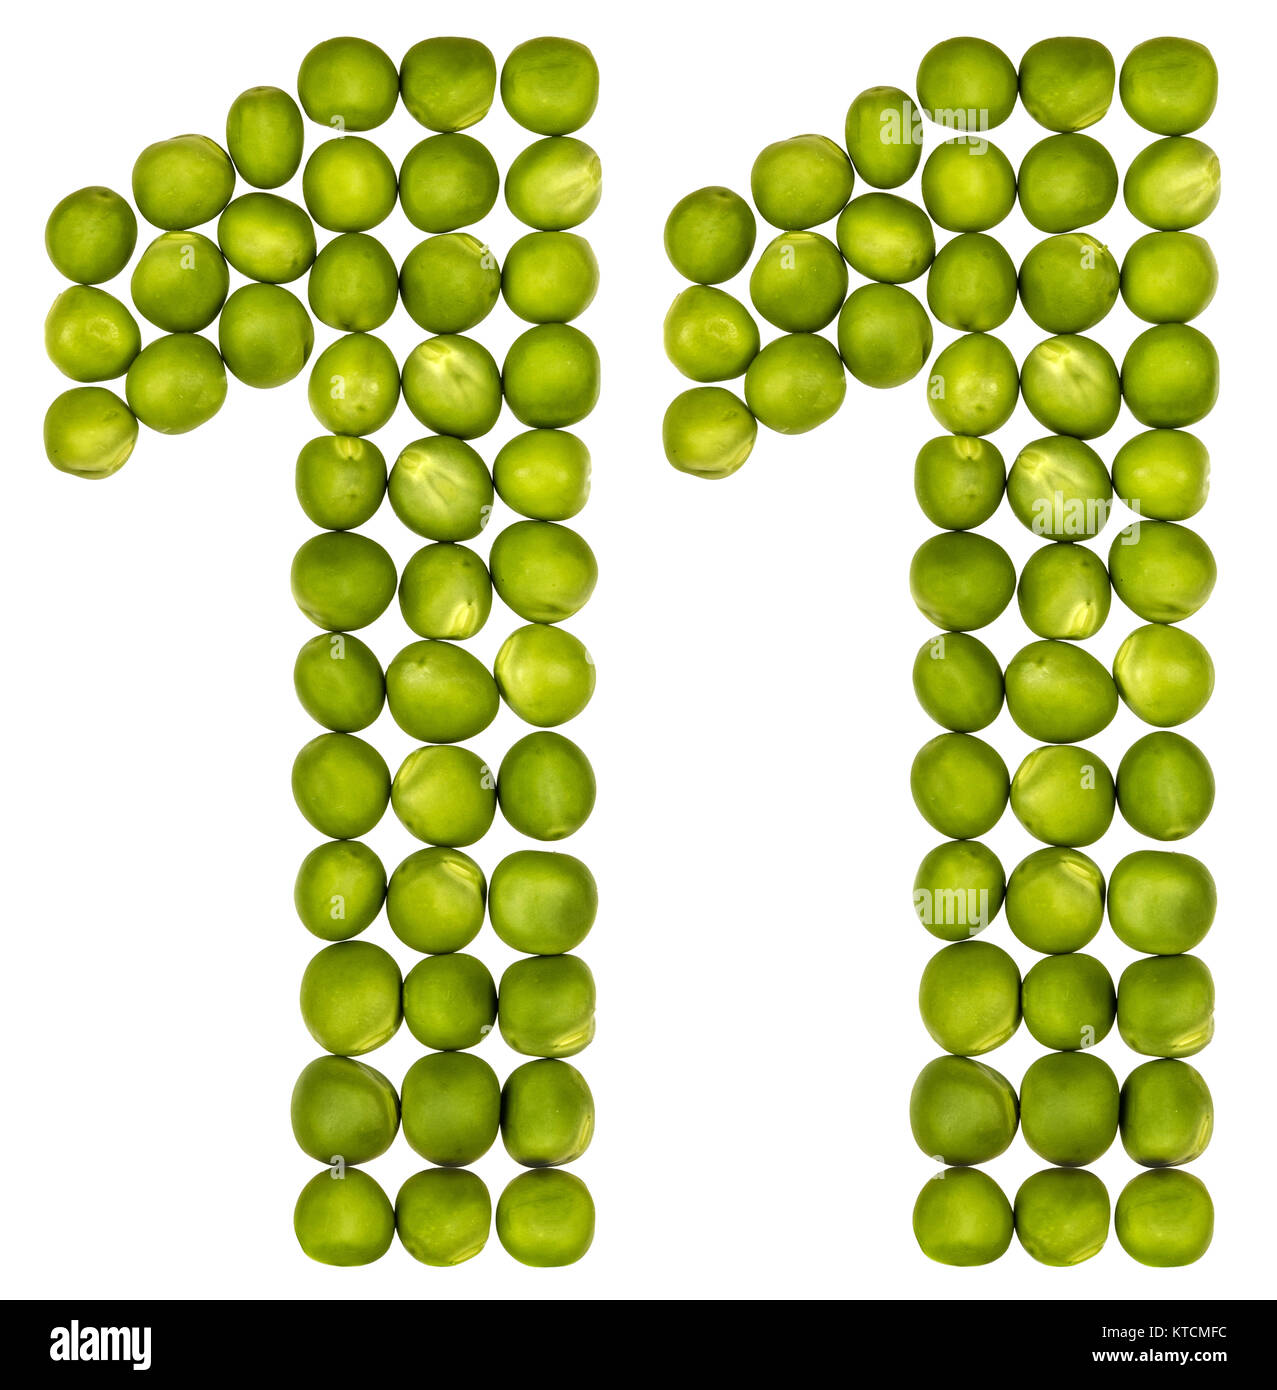 Numero arabo 11, undici, dal verde piselli, isolati su sfondo bianco Foto Stock